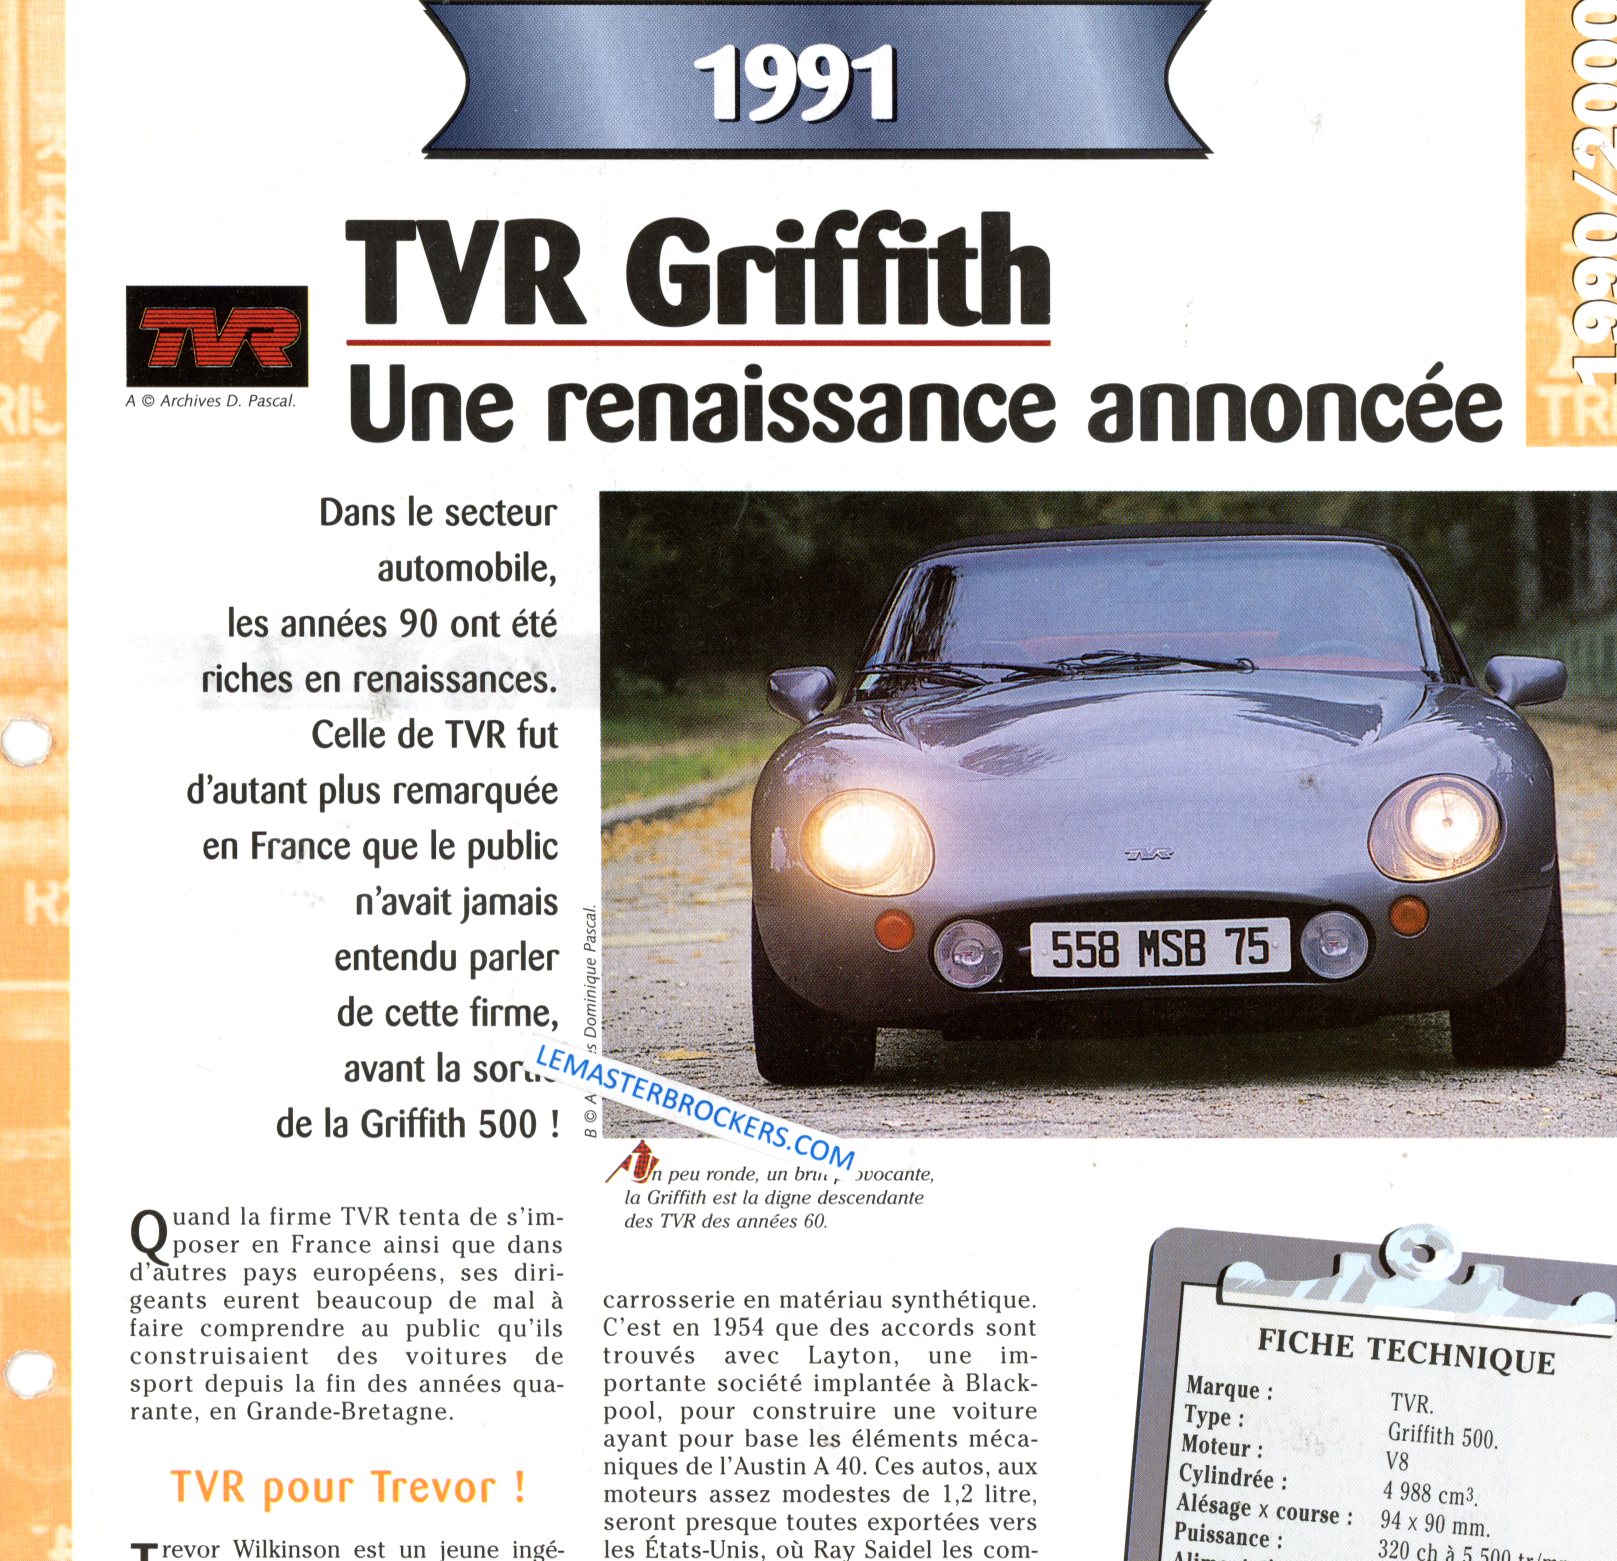 TVR GRIFFITH 1991 FICHE TECHNIQUE